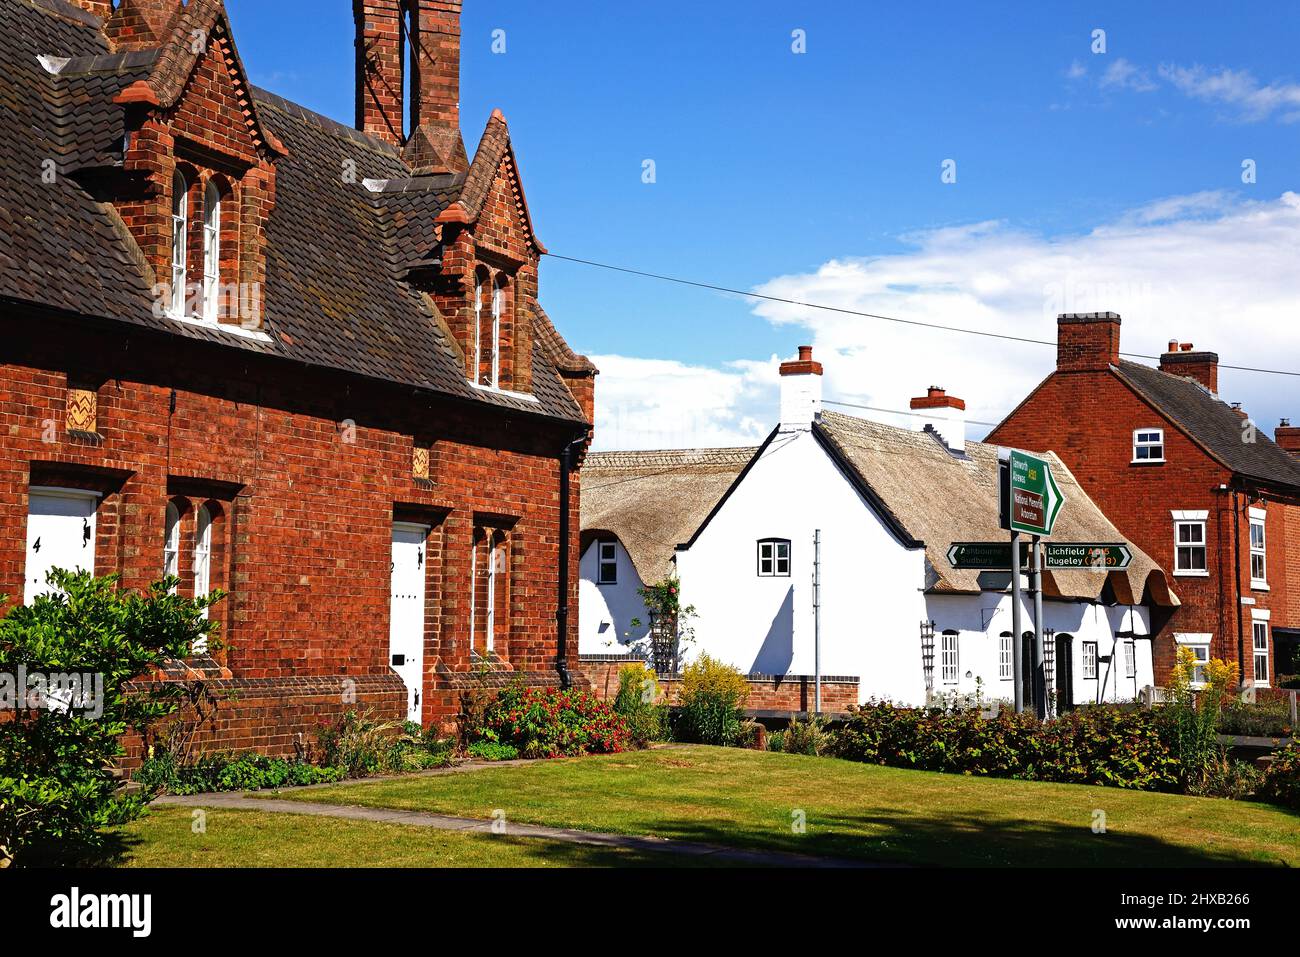 Bonitos edificios ingleses tradicionales en el centro del pueblo, Kings Bromley, Staffordshire, Inglaterra, Reino Unido, Europa. Foto de stock